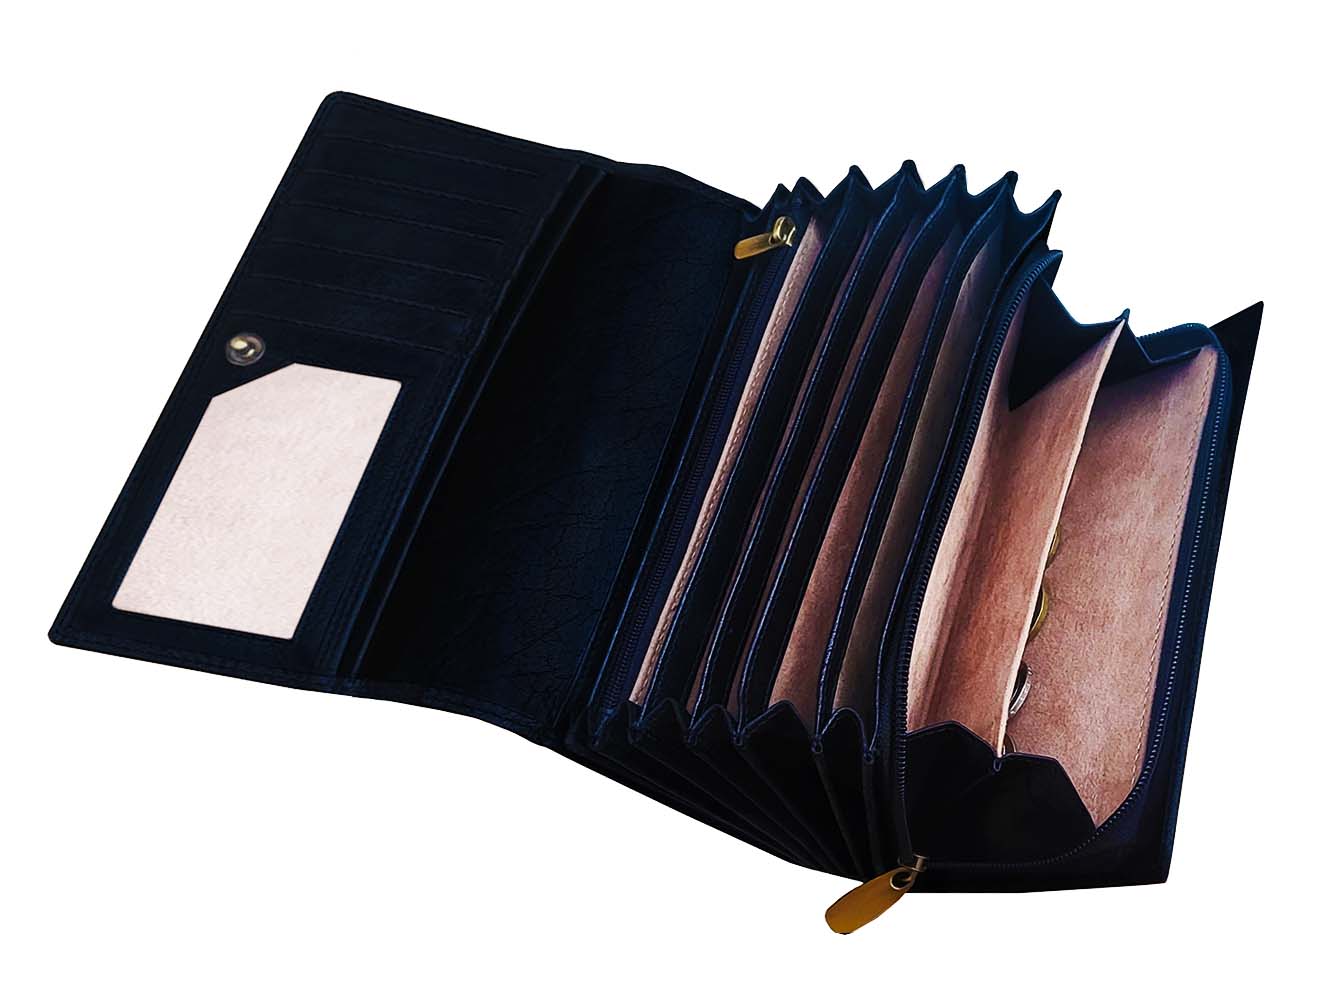 Kožená kasírka - XL peněženka pro velký objem peněz